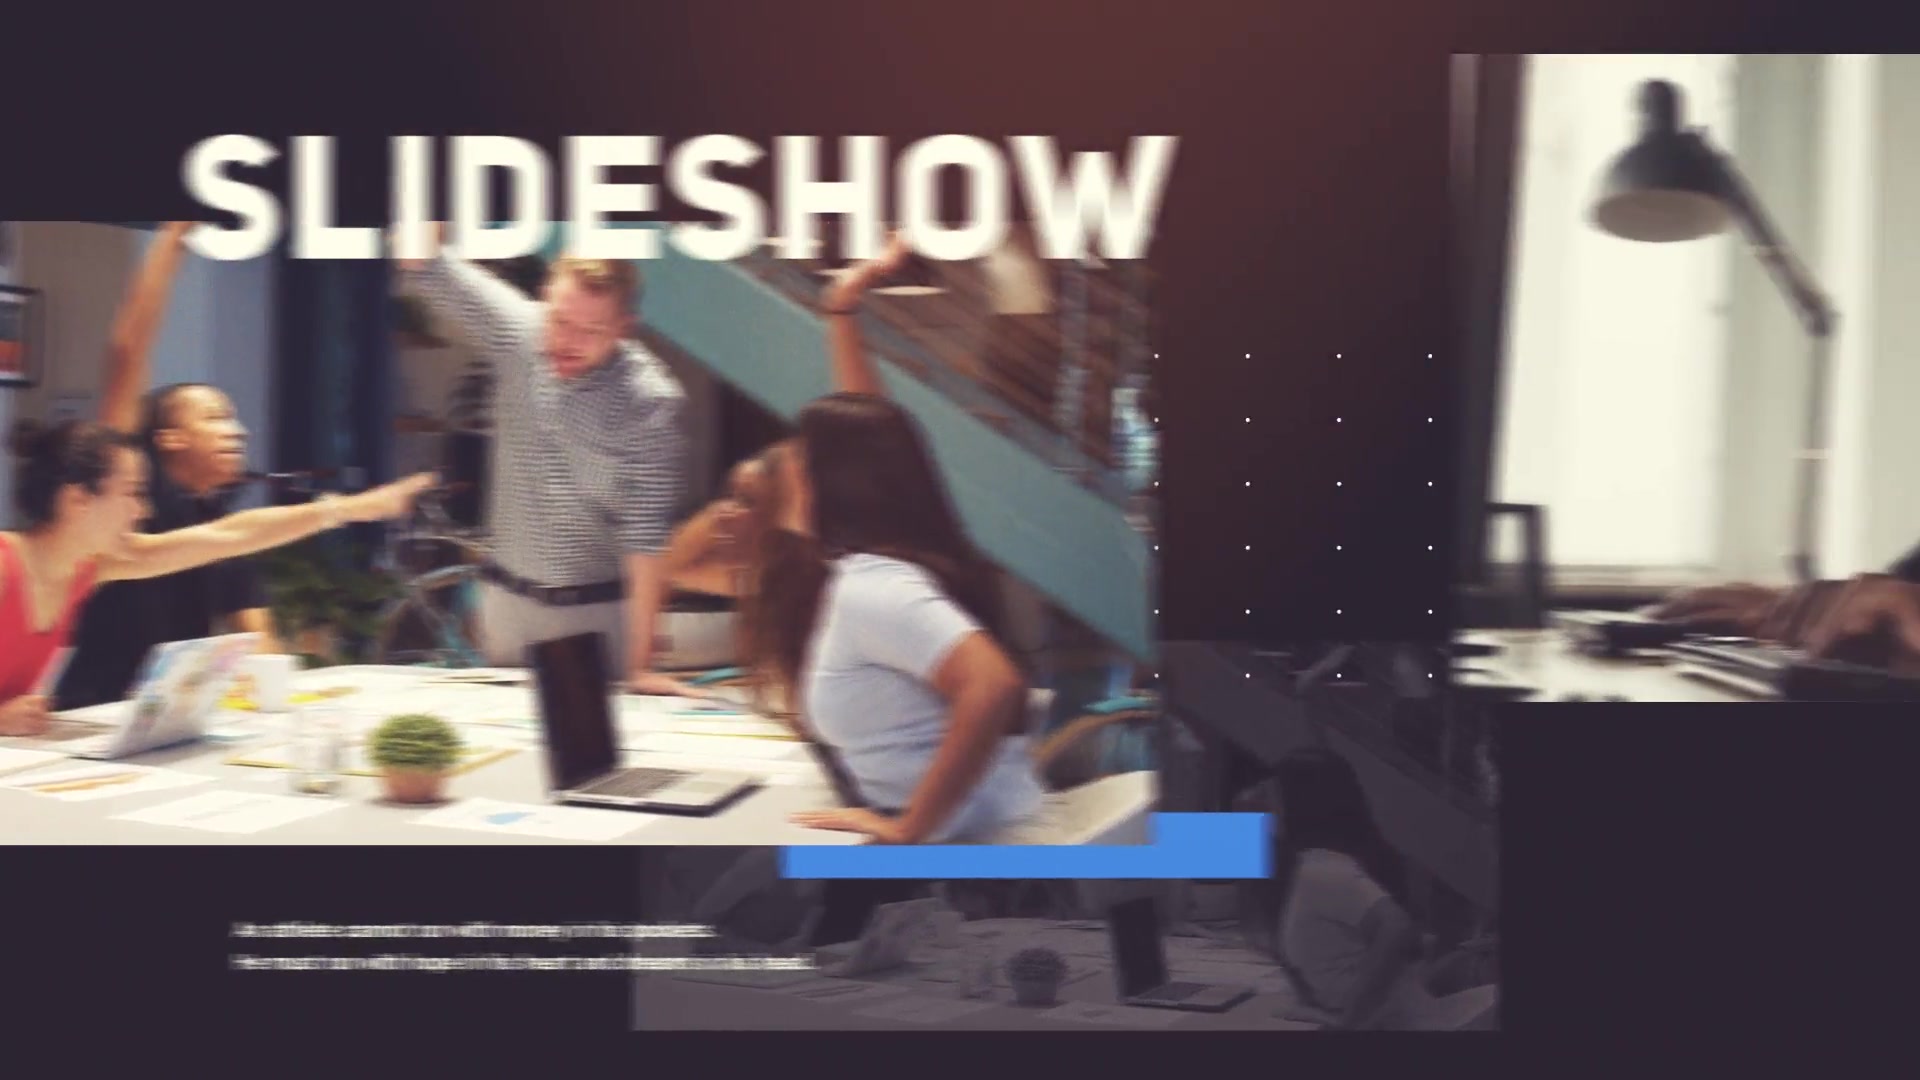 Corporate Slideshow | Presentation Videohive 35641703 Premiere Pro Image 4